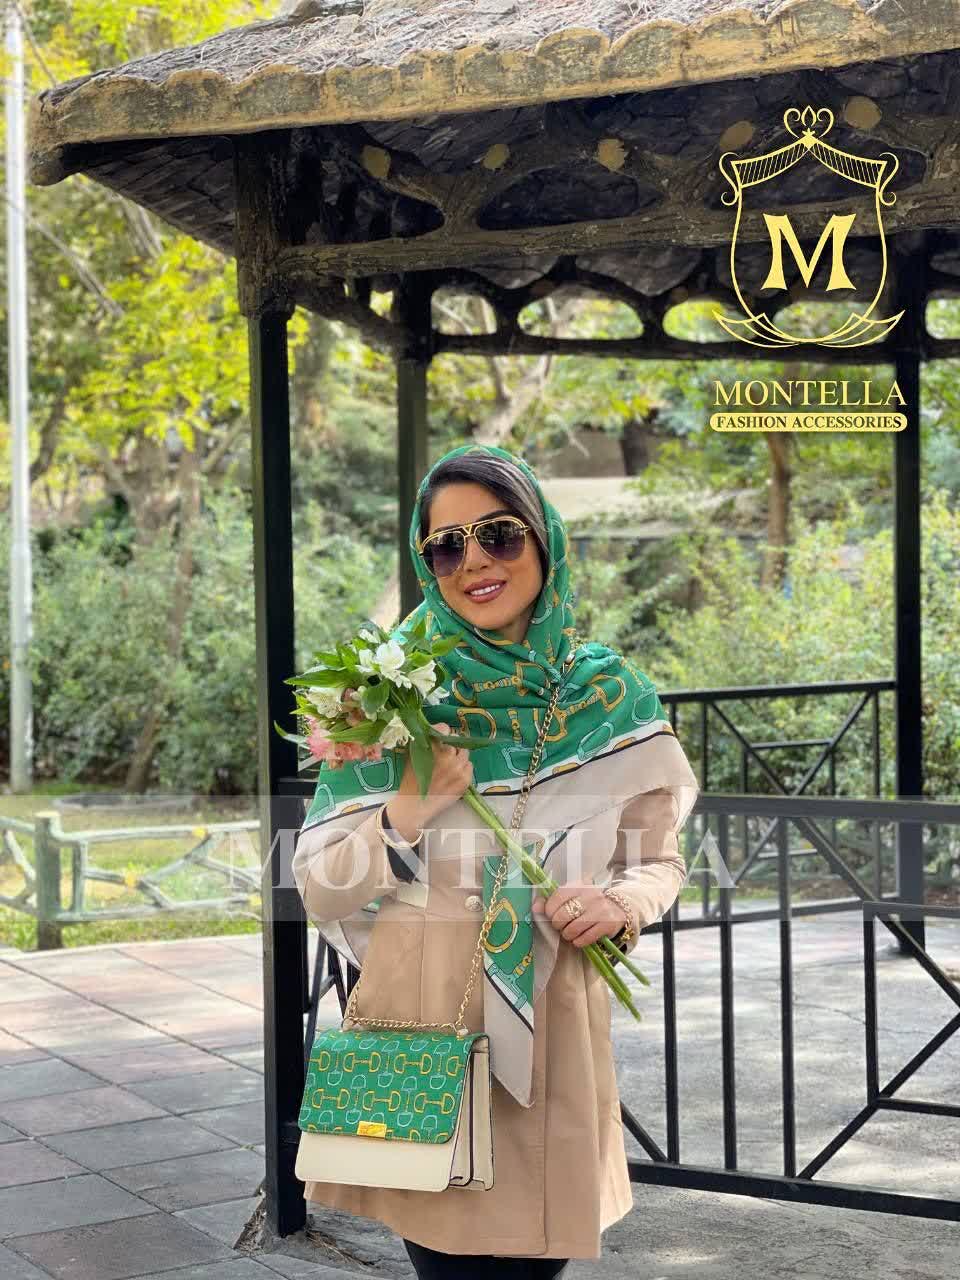 ست کیف و روسری و شال زنانه باکیفیت طرح نلین سبز با کیف پاسپورتی دسته زنجیری با ارسال رایگان کد mo460